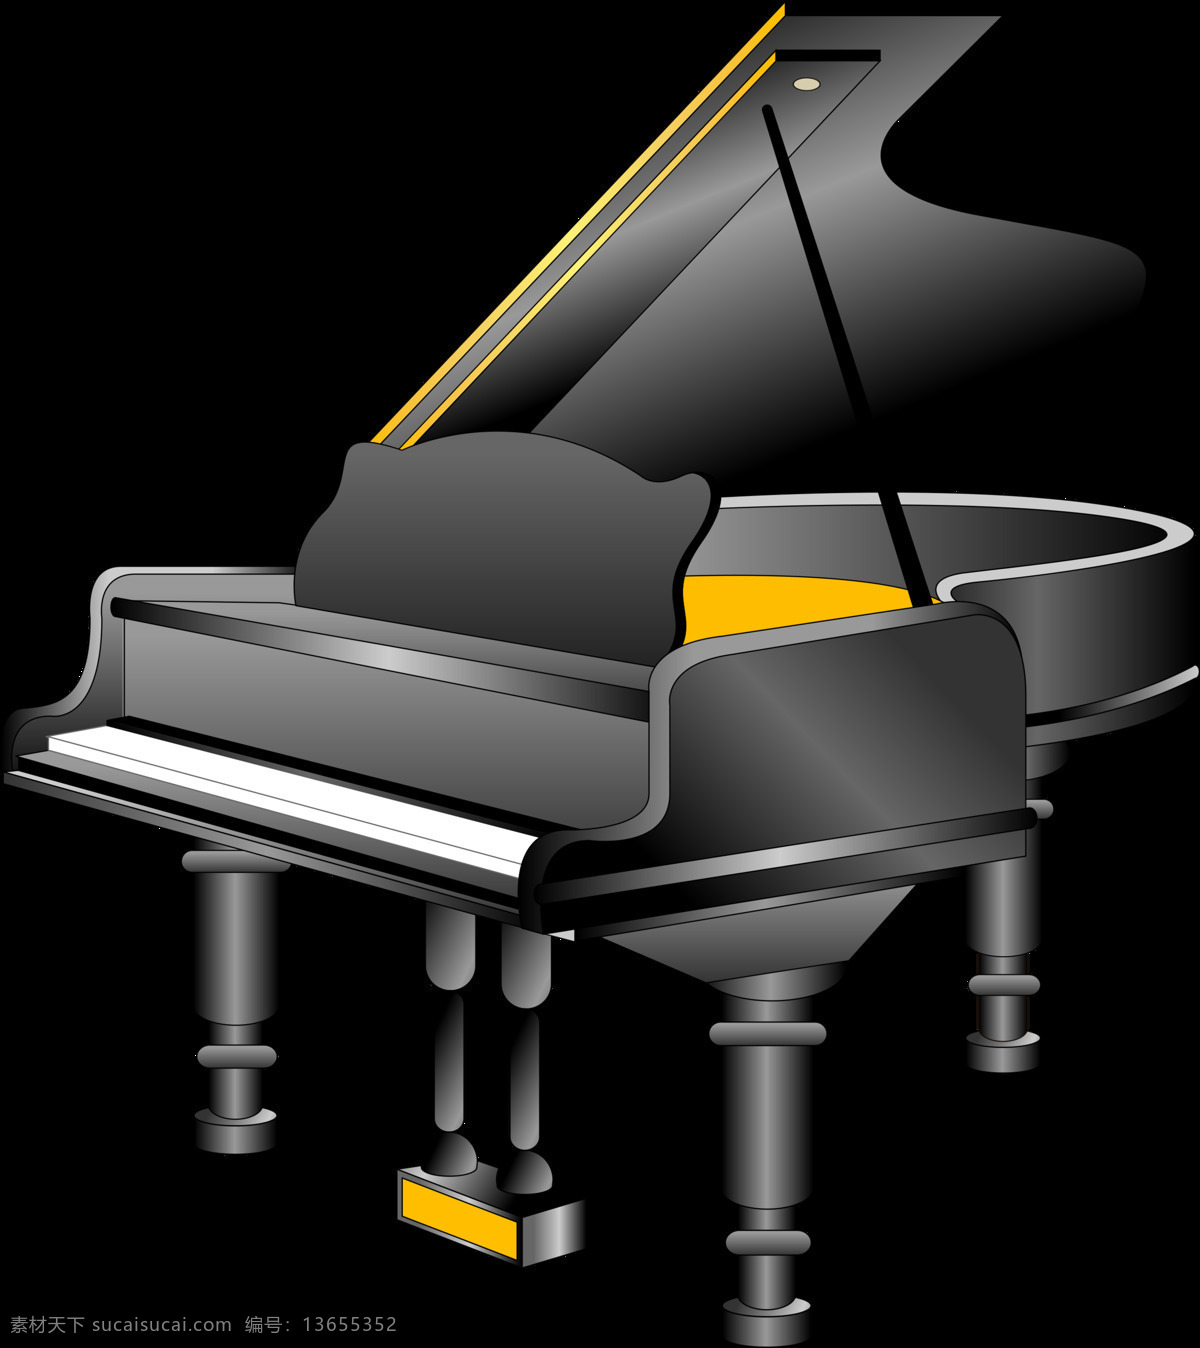 黑色 卡通 钢琴 元素 钢琴海报 钢琴培训 钢琴素材 钢琴音乐 钢琴音乐会 钢琴元素 卡通钢琴 音乐 音乐背景 音乐素材 音乐图片 音乐元素